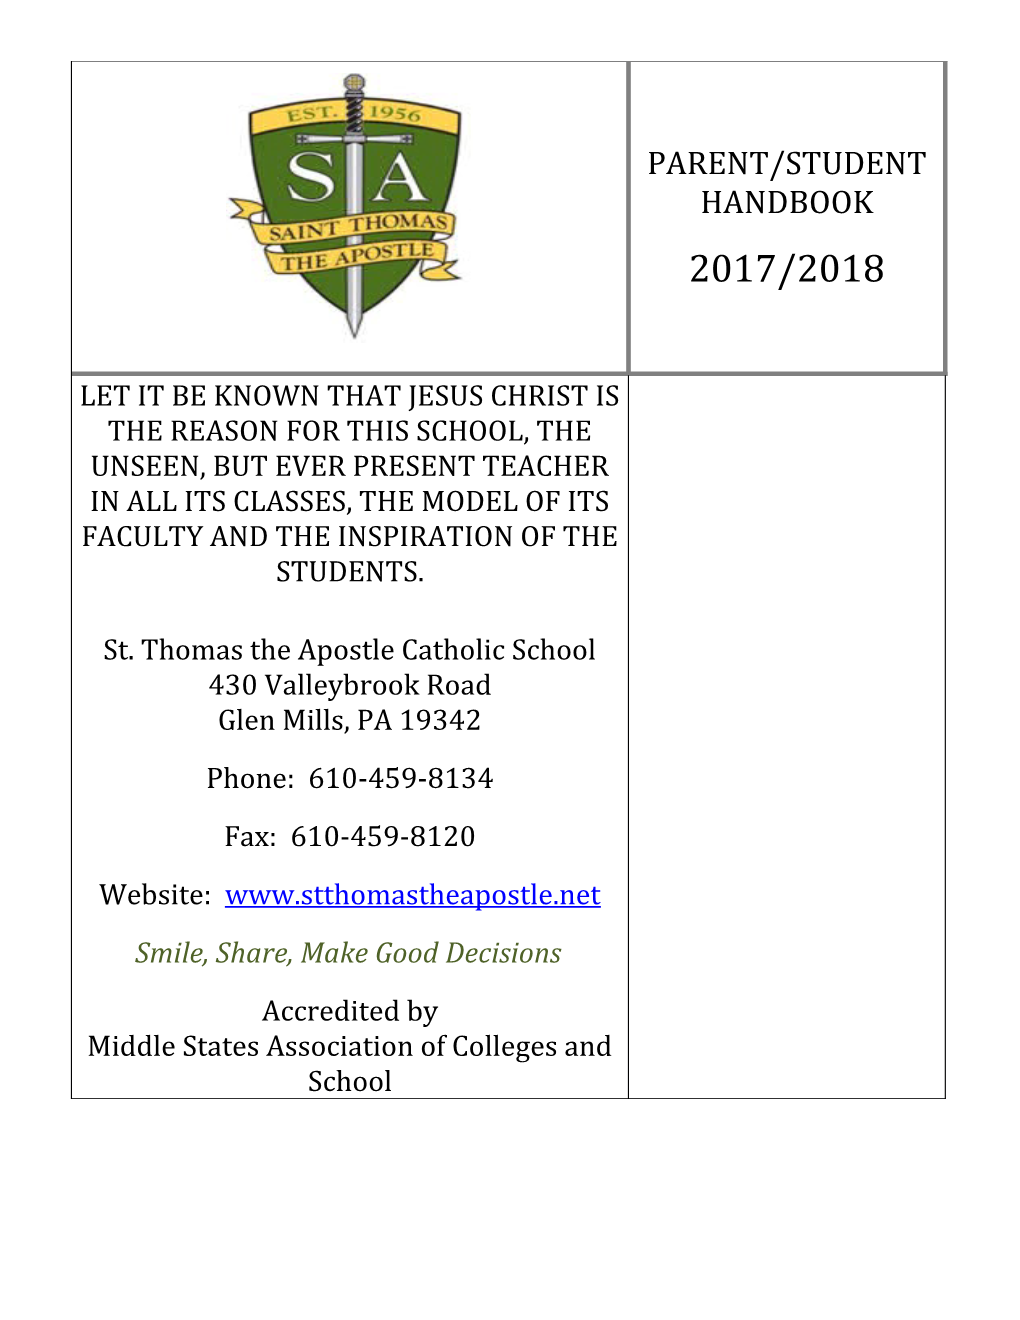 Saint Thomas the Apostle School